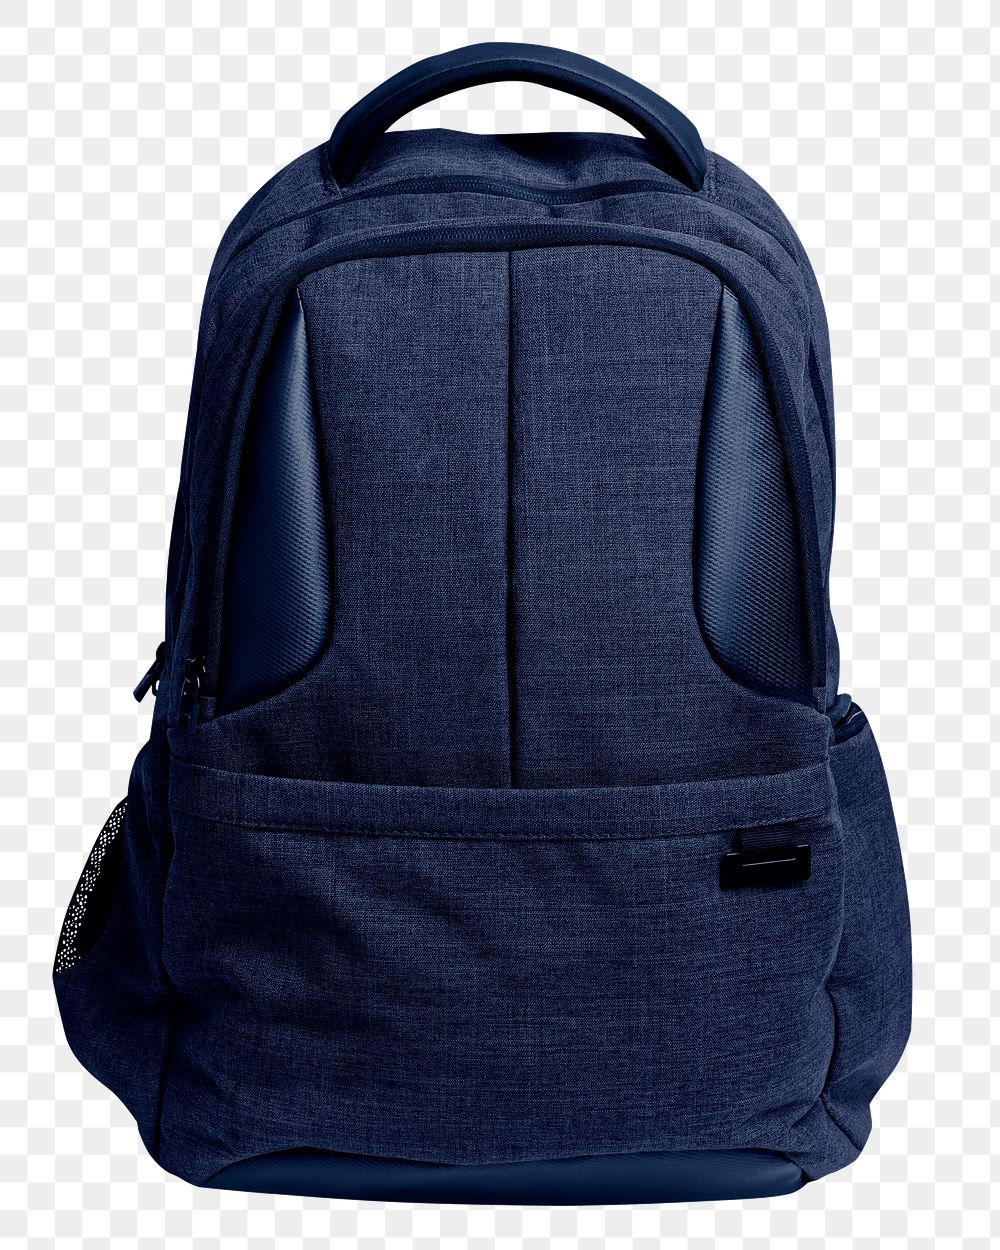 Blue backpack png transparent background